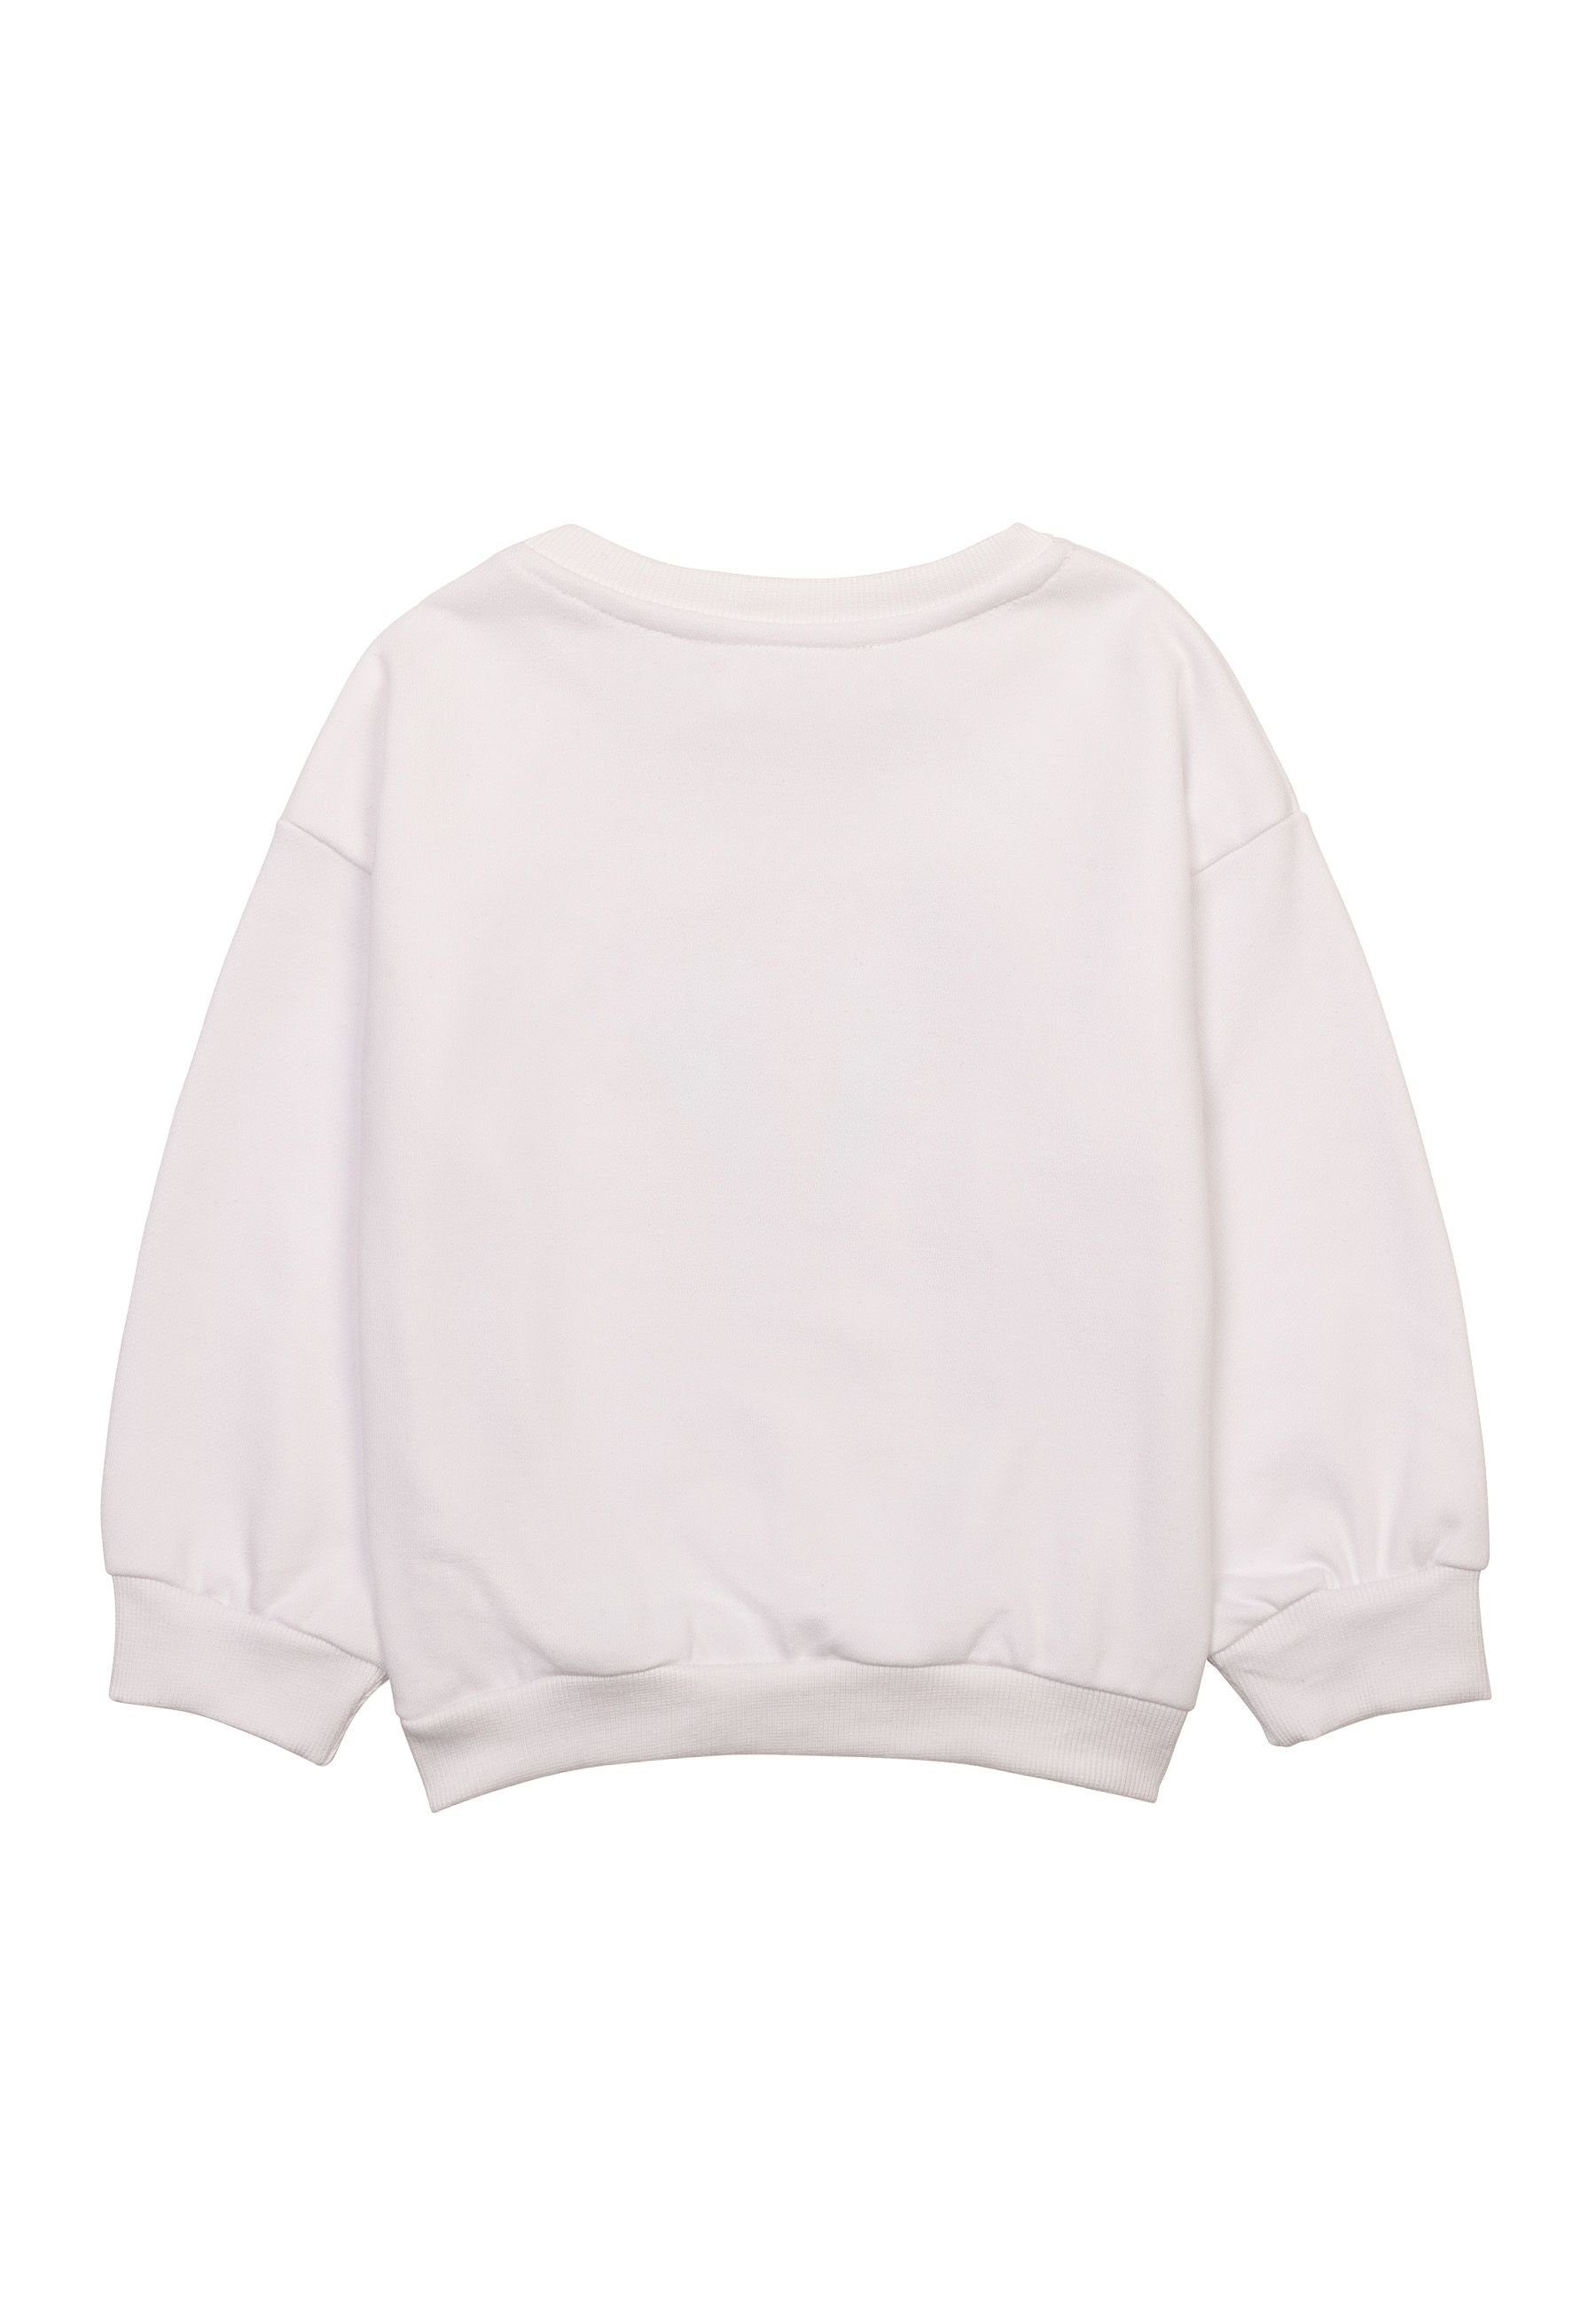 MINOTI Sweatshirt Mädchen Sweatshirt mit Muster (1y-8y) Weiß